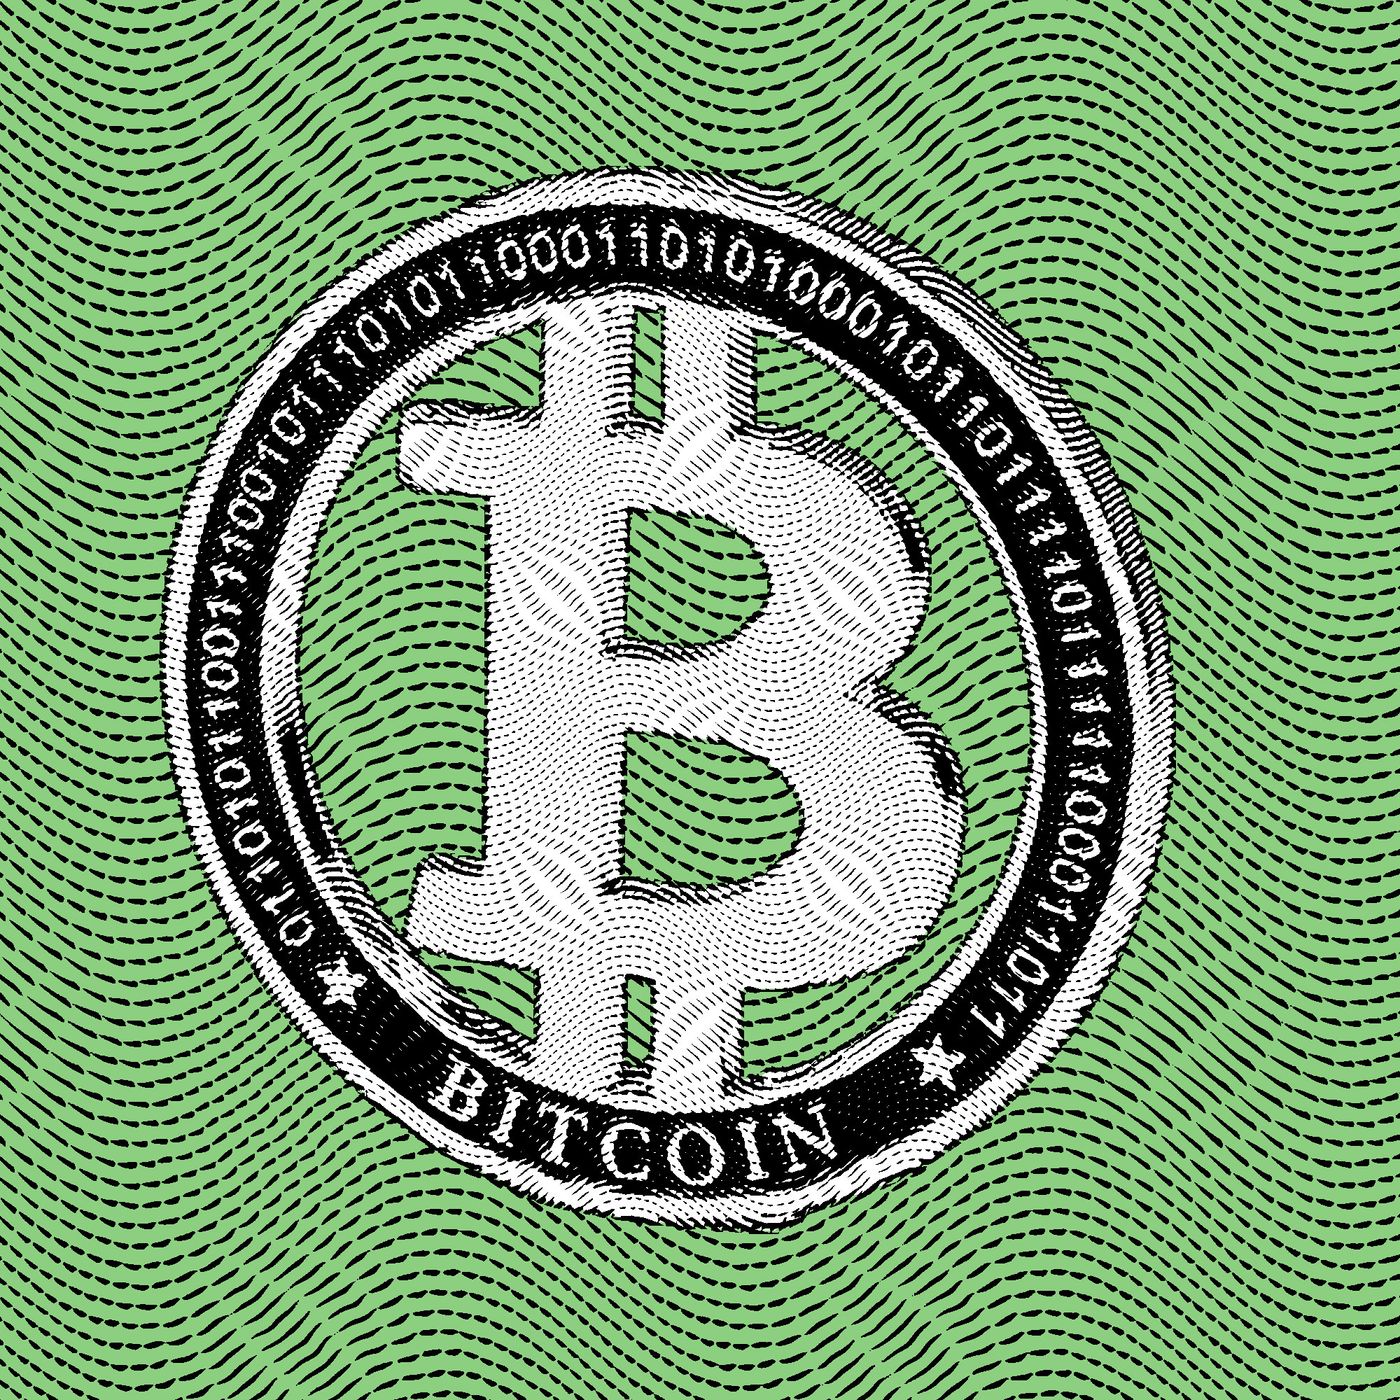 Will a Bitcoin ETF Make Crypto Go Mainstream?